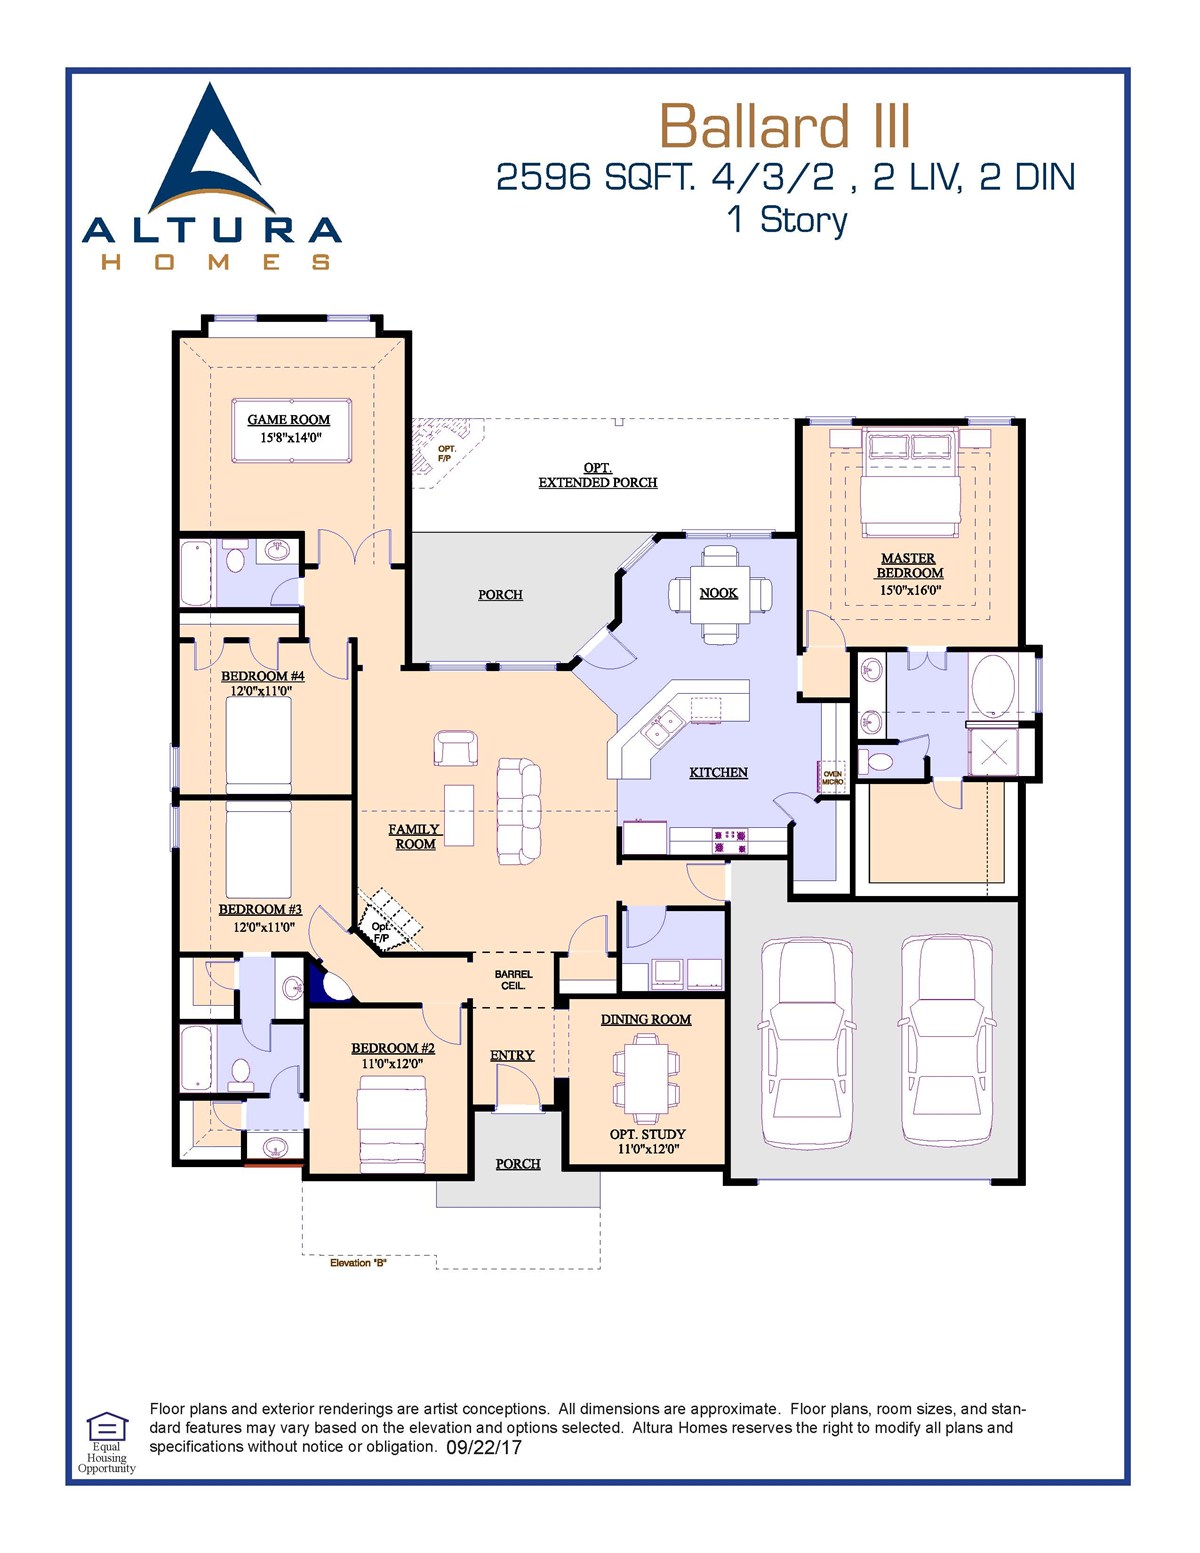 The Ballard III by Altura Homes Floor Plan Friday Marr